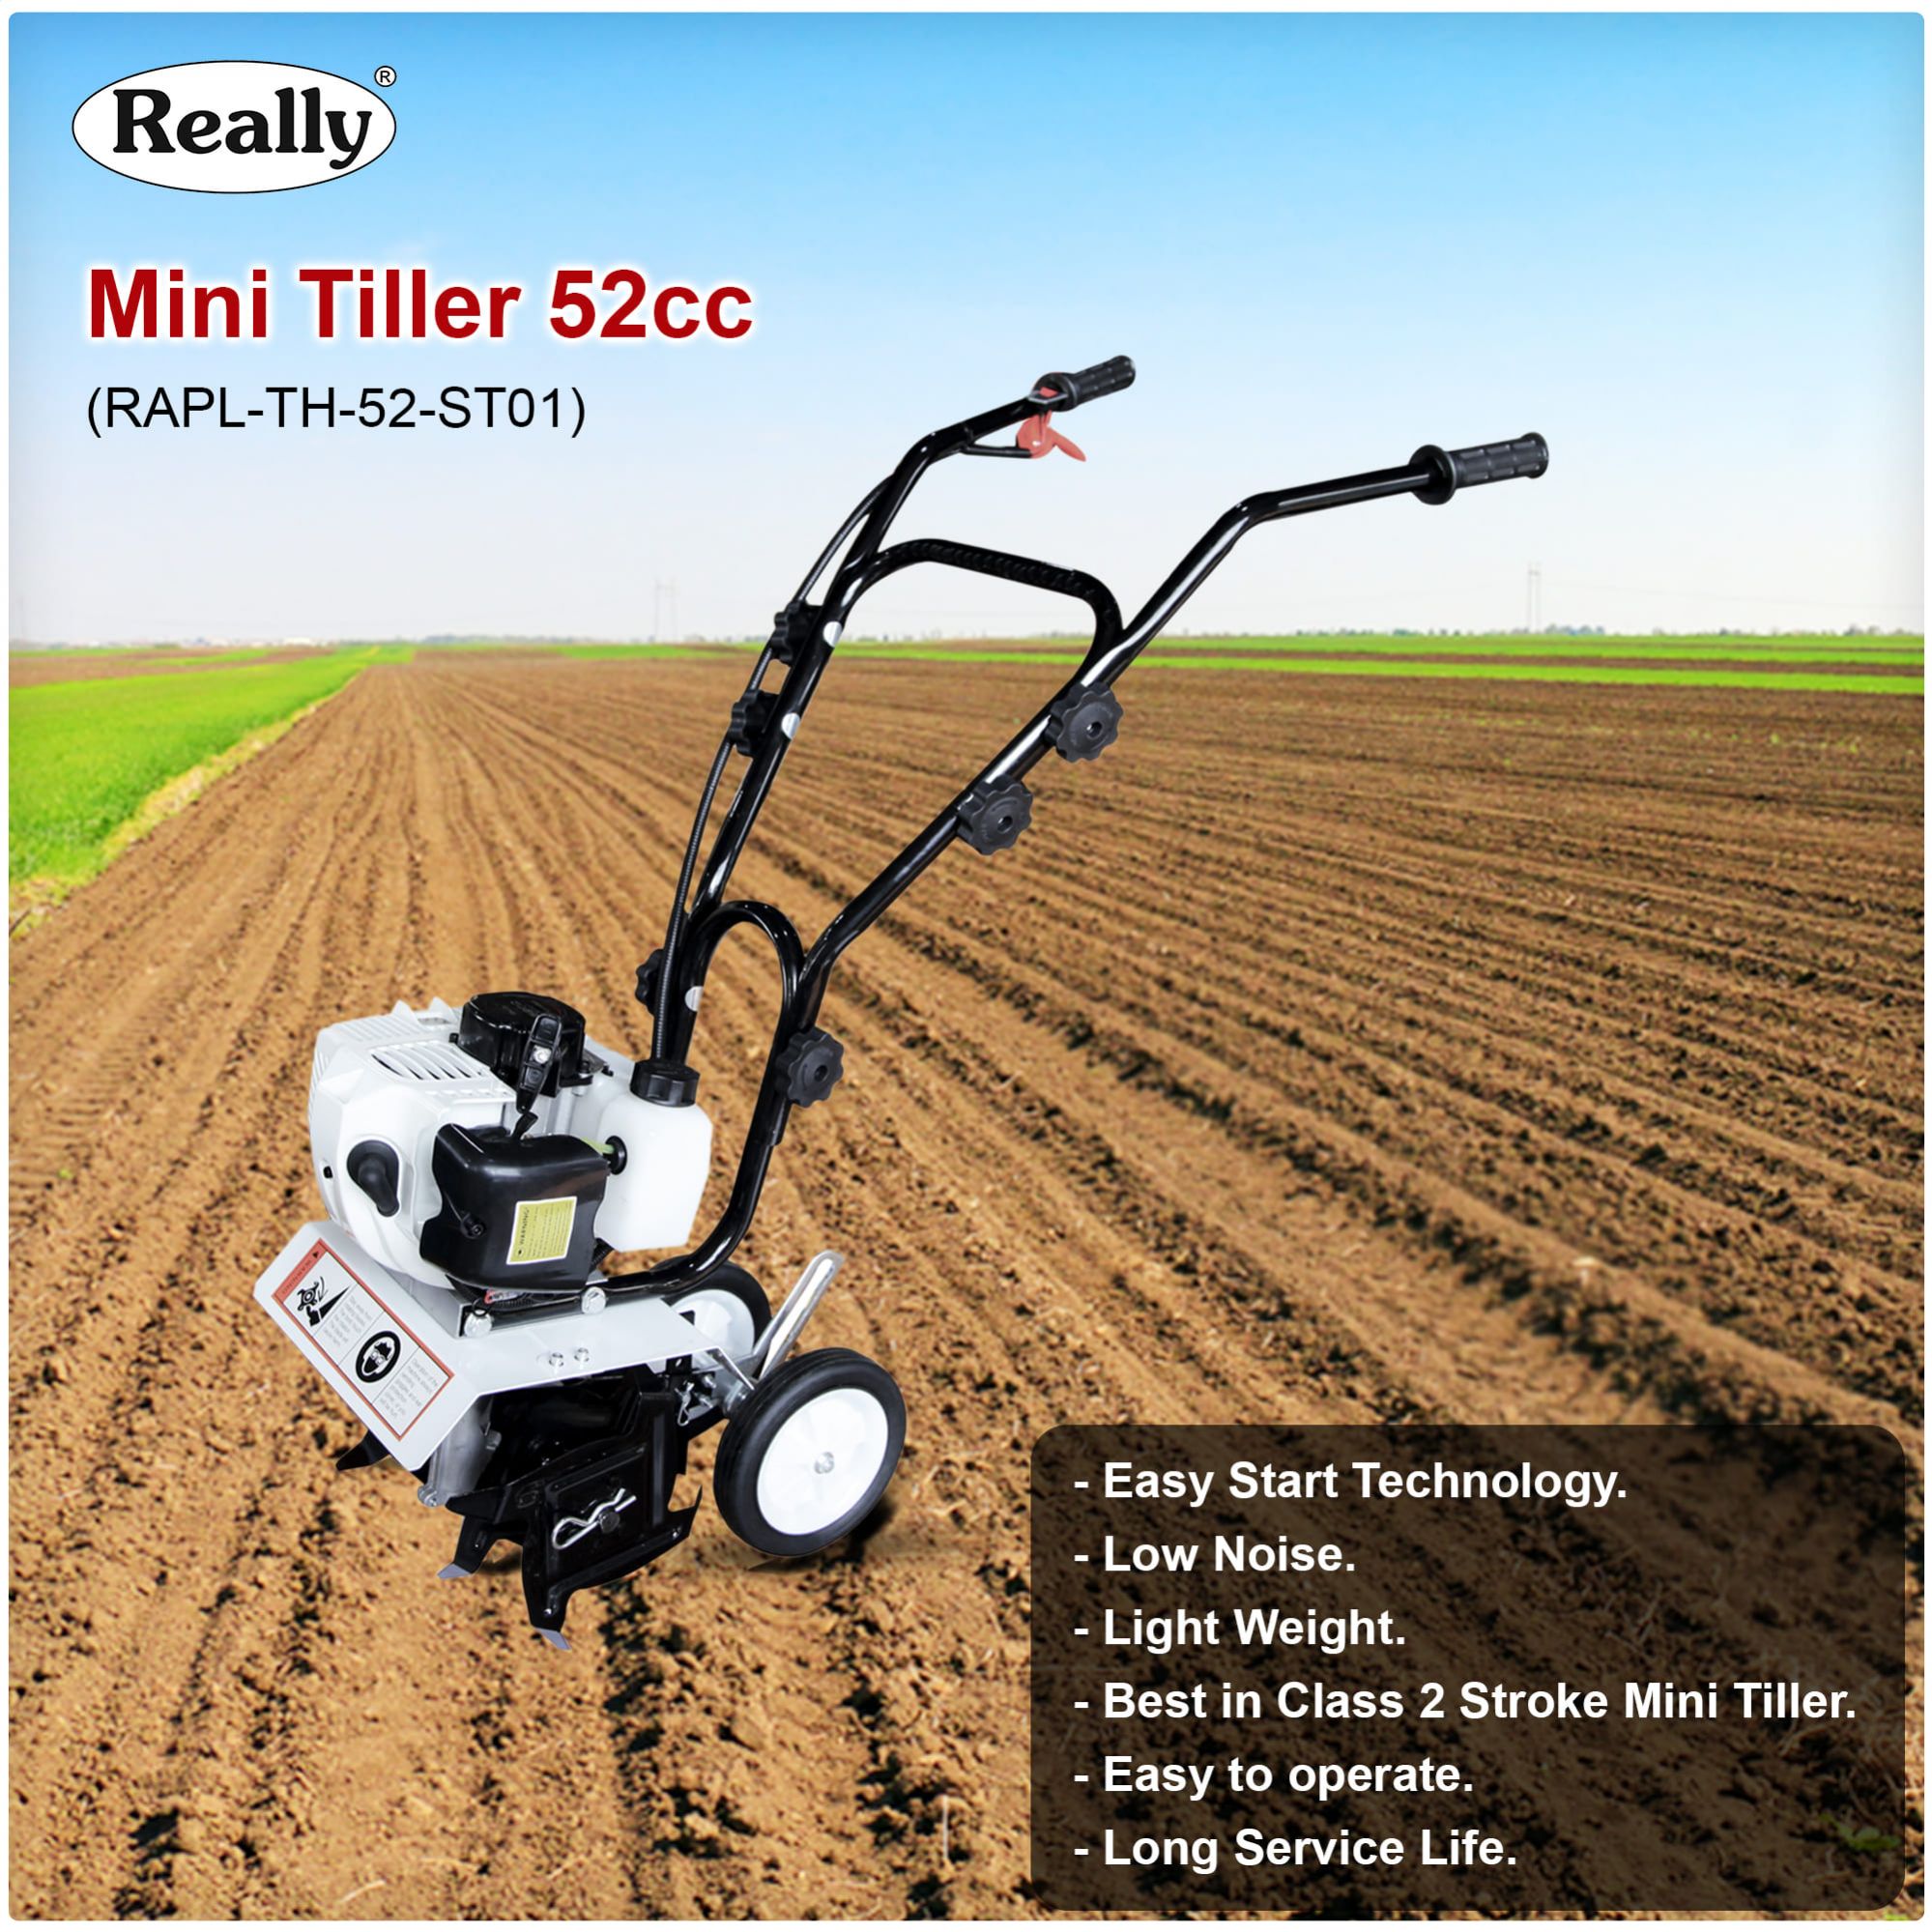 Really Mini Tiller 52cc 2 Stroke (RAPL-TH-52-ST01)